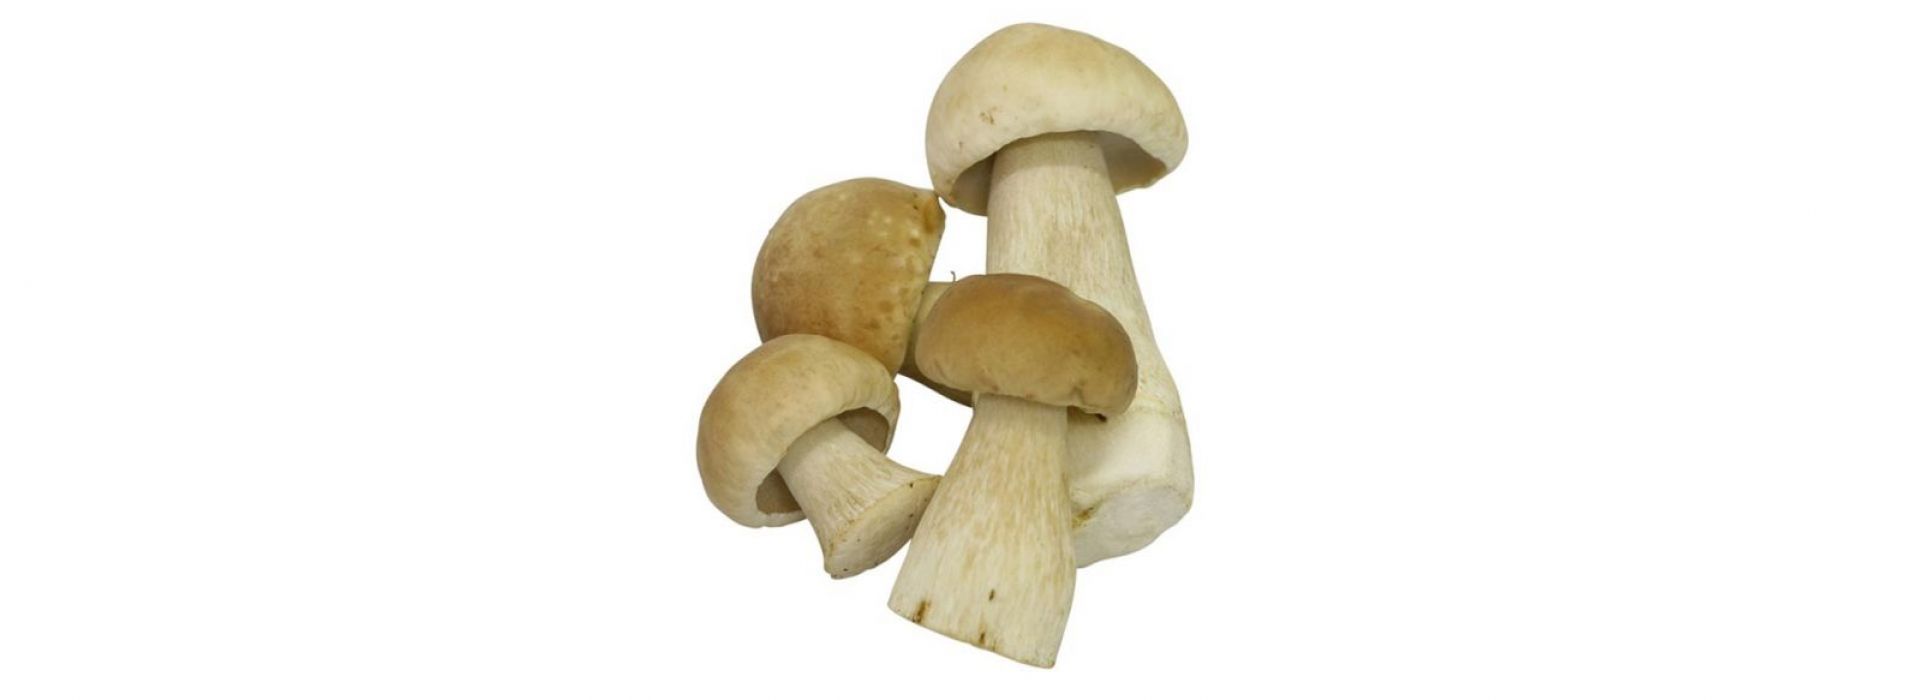 Mushroom Ceps